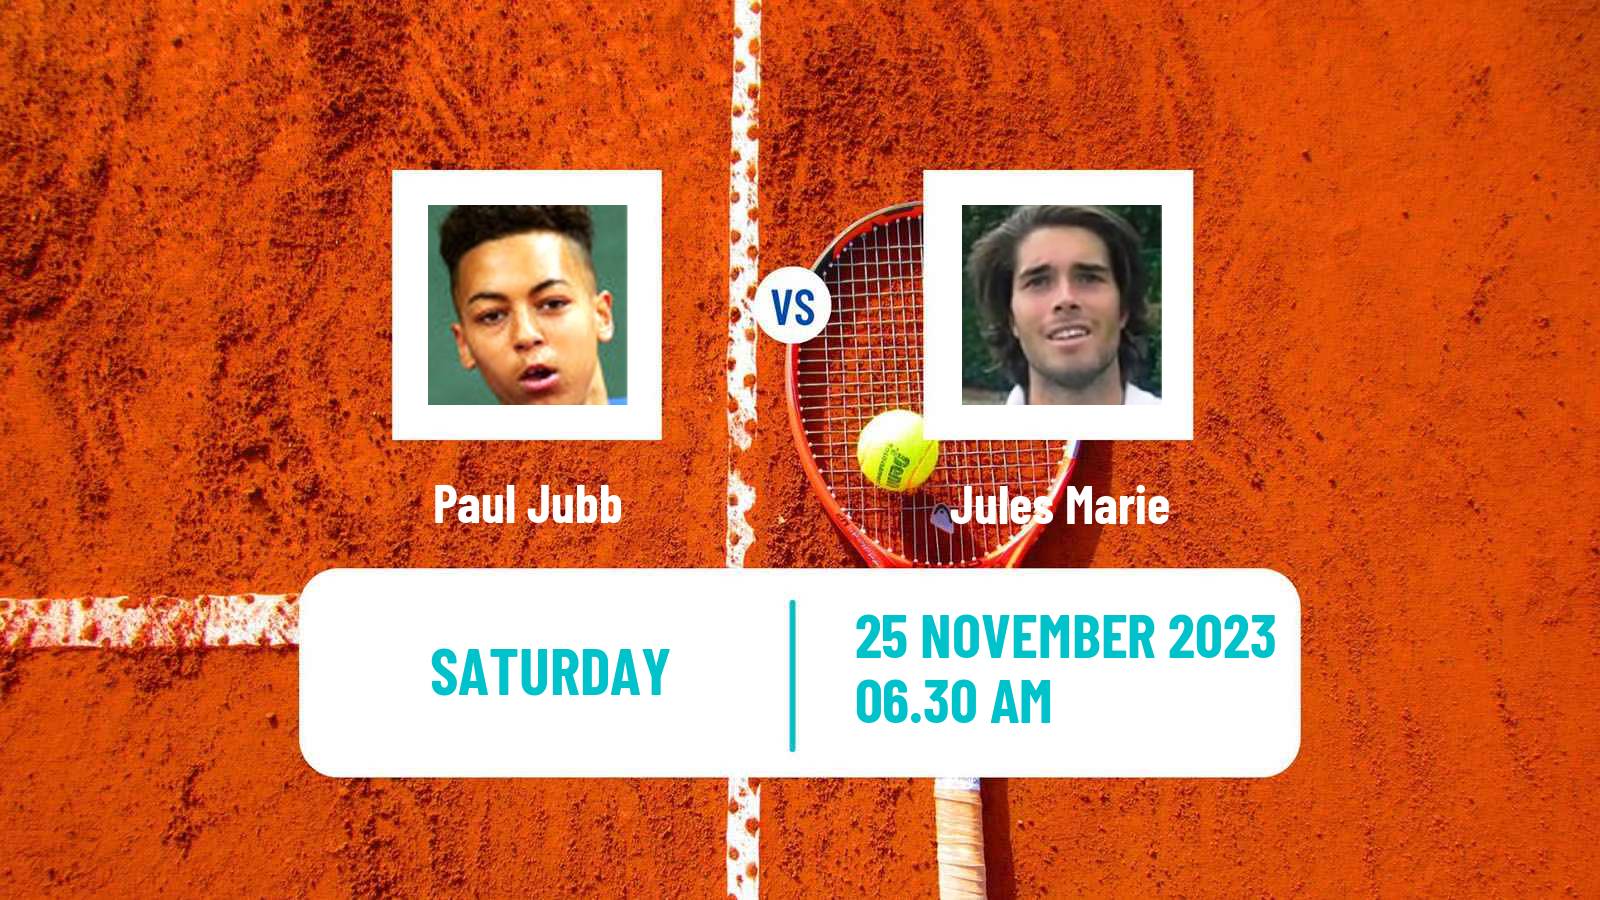 Tennis ITF M25 Vale Do Lobo 2 Men Paul Jubb - Jules Marie